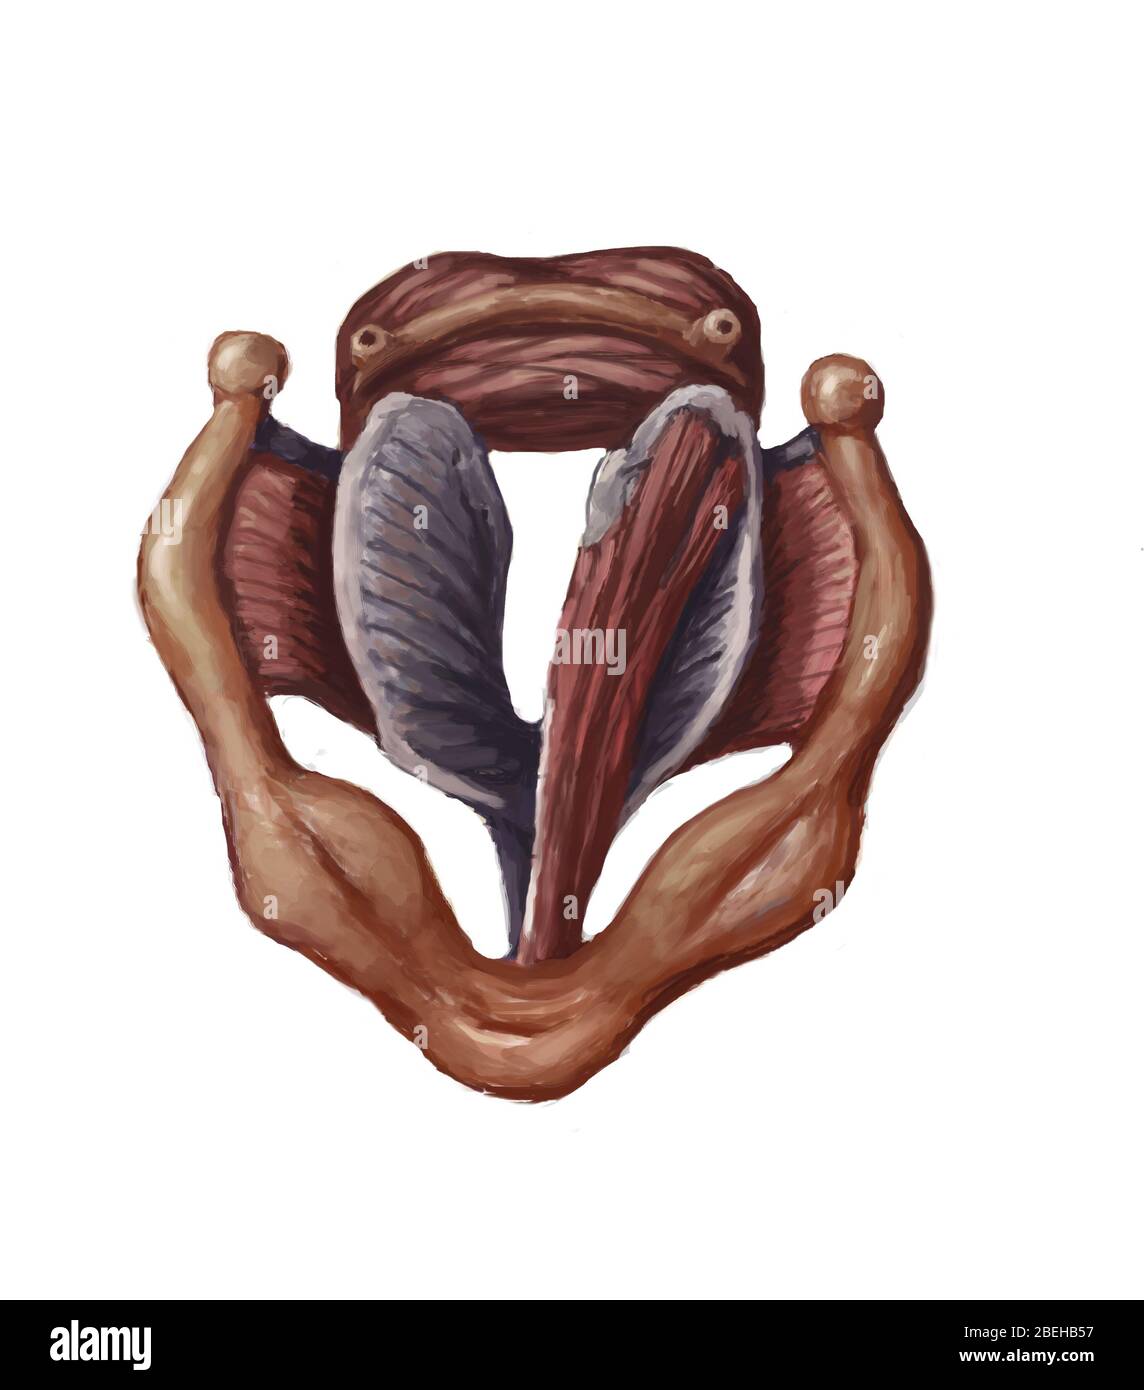 Anatomie d'une trachée, illustration Banque D'Images